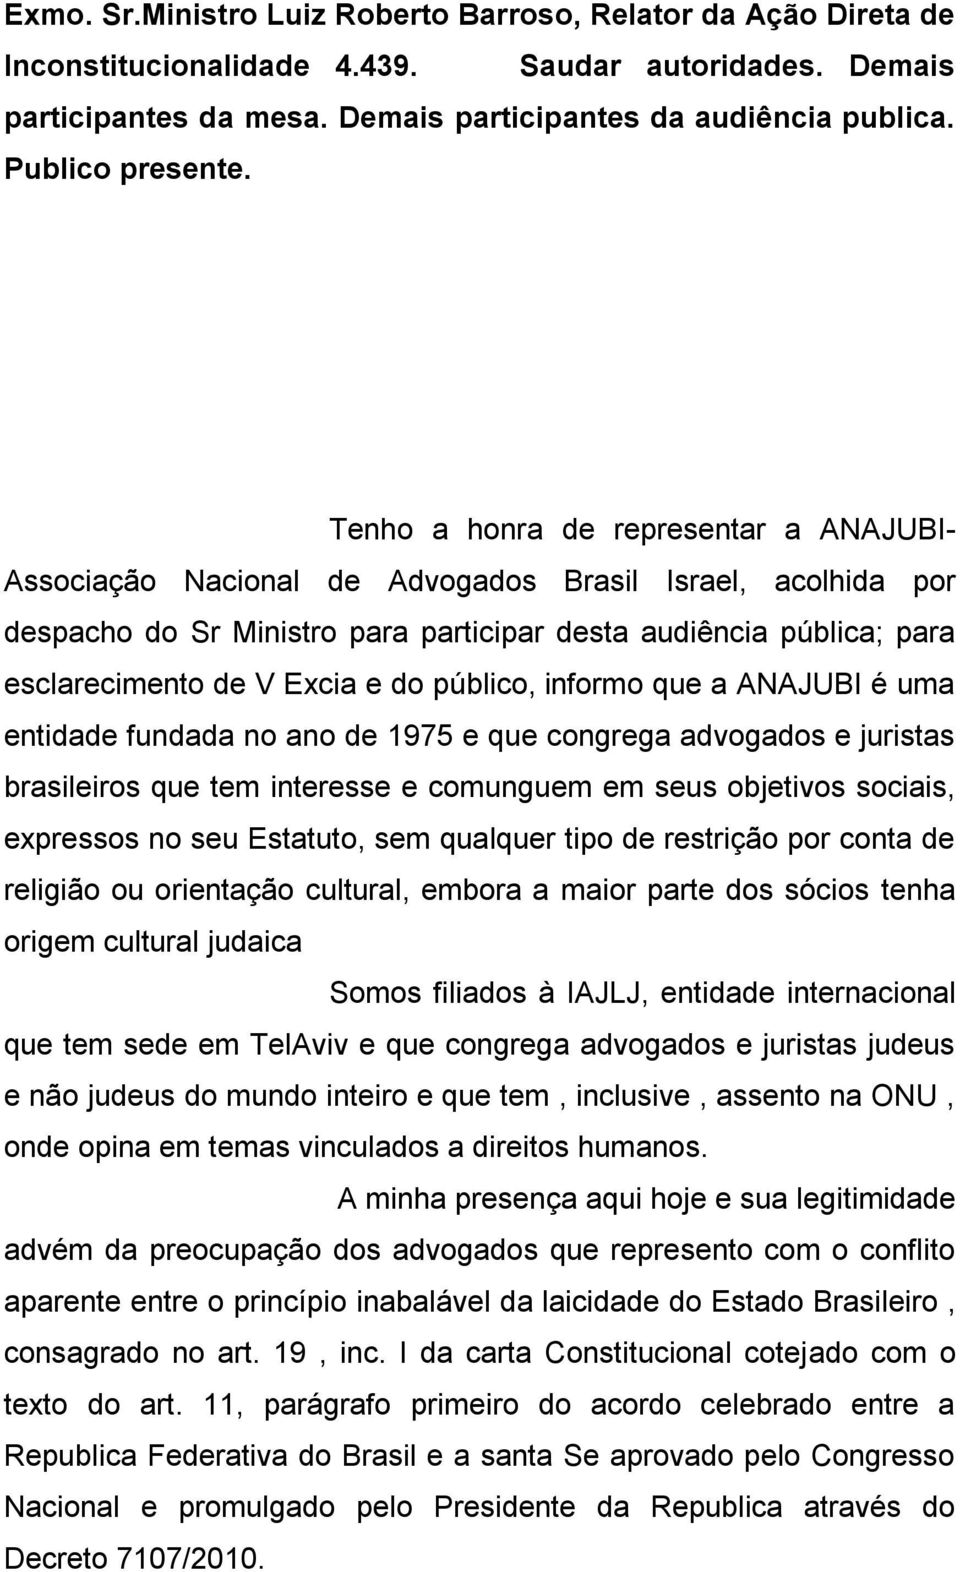 Tenho a honra de representar a ANAJUBI- Associação Nacional de Advogados Brasil Israel, acolhida por despacho do Sr Ministro para participar desta audiência pública; para esclarecimento de V Excia e